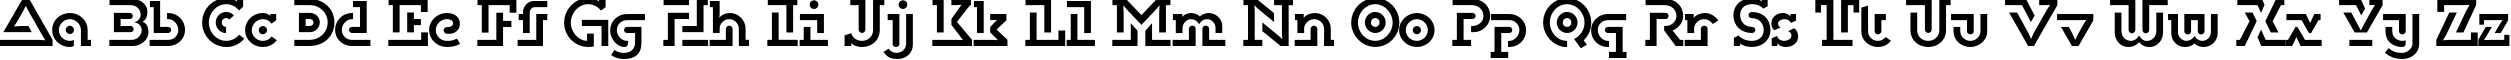 Пример написания английского алфавита шрифтом DublonBrus